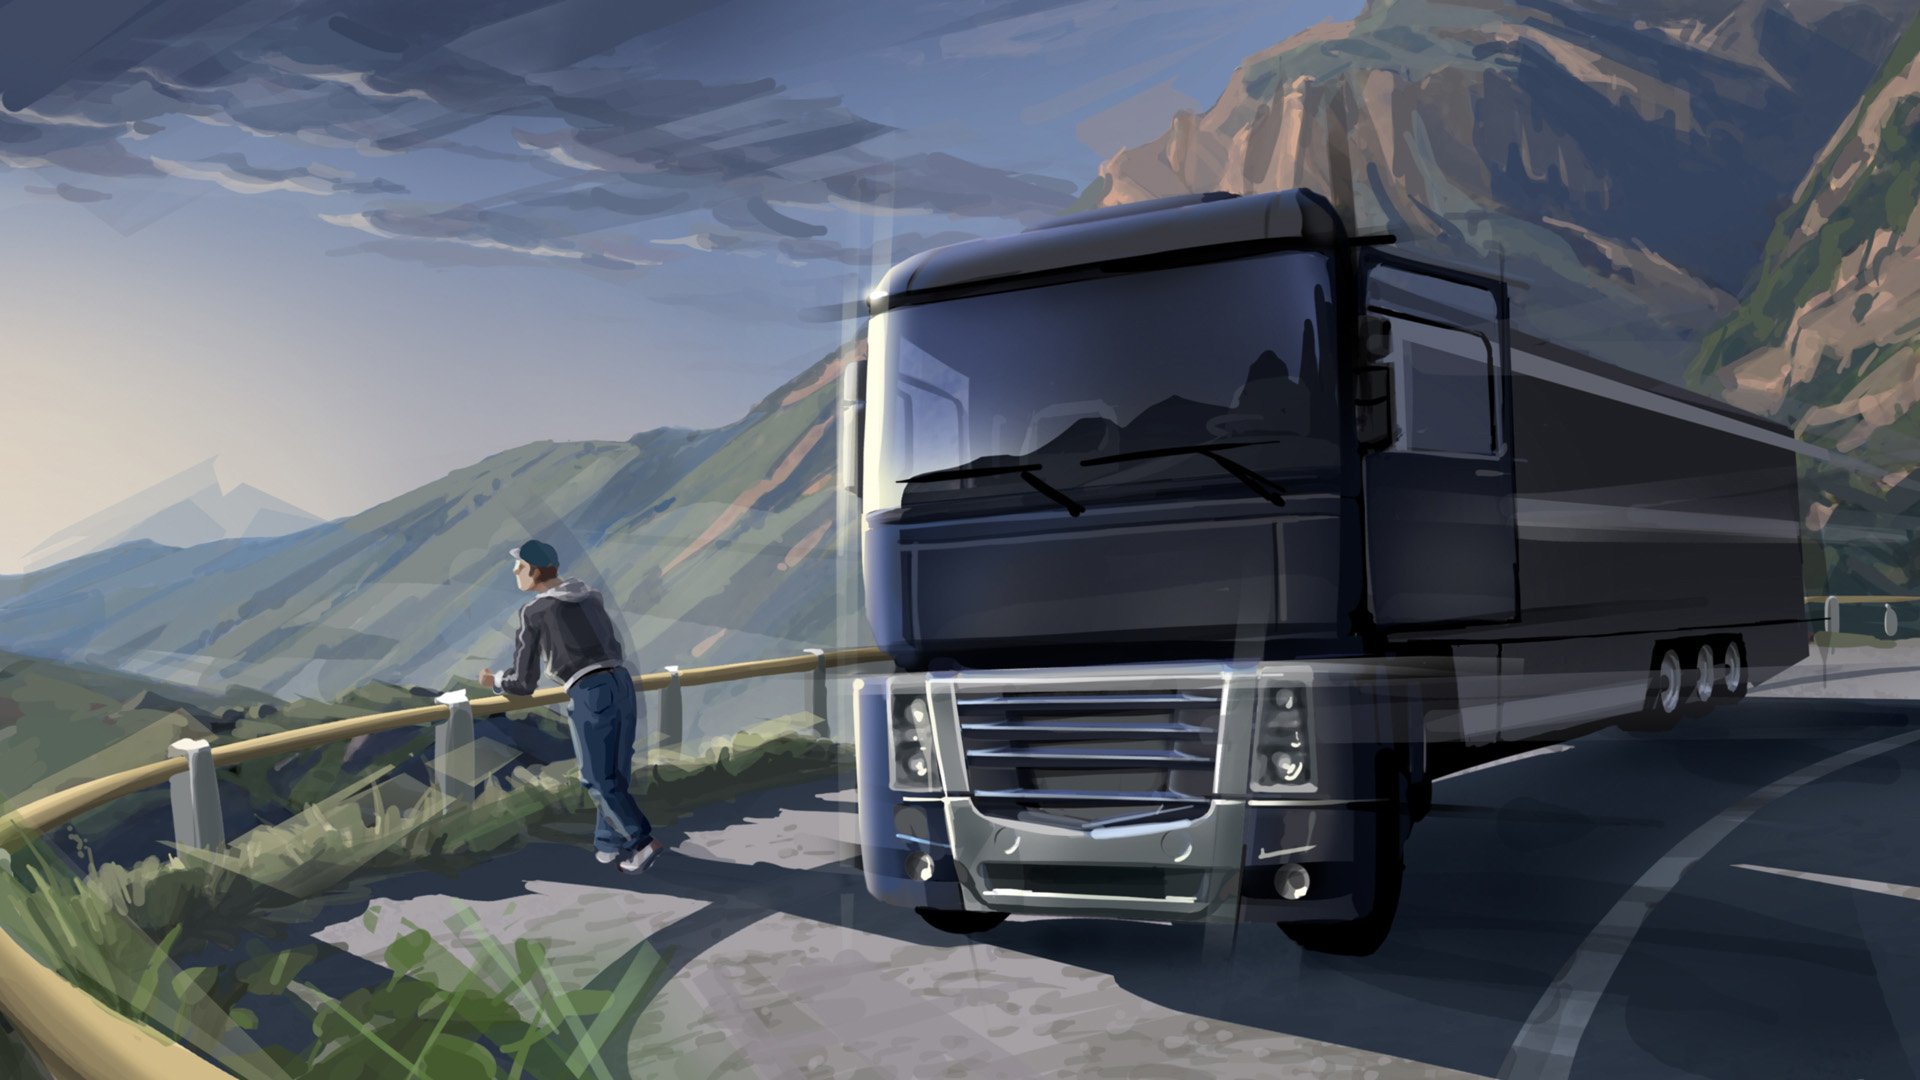 欧洲卡车模拟2 高清壁纸截图_欧洲卡车模拟2 高清壁纸壁纸_欧洲卡车模拟2 高清壁纸图片_3DM单机